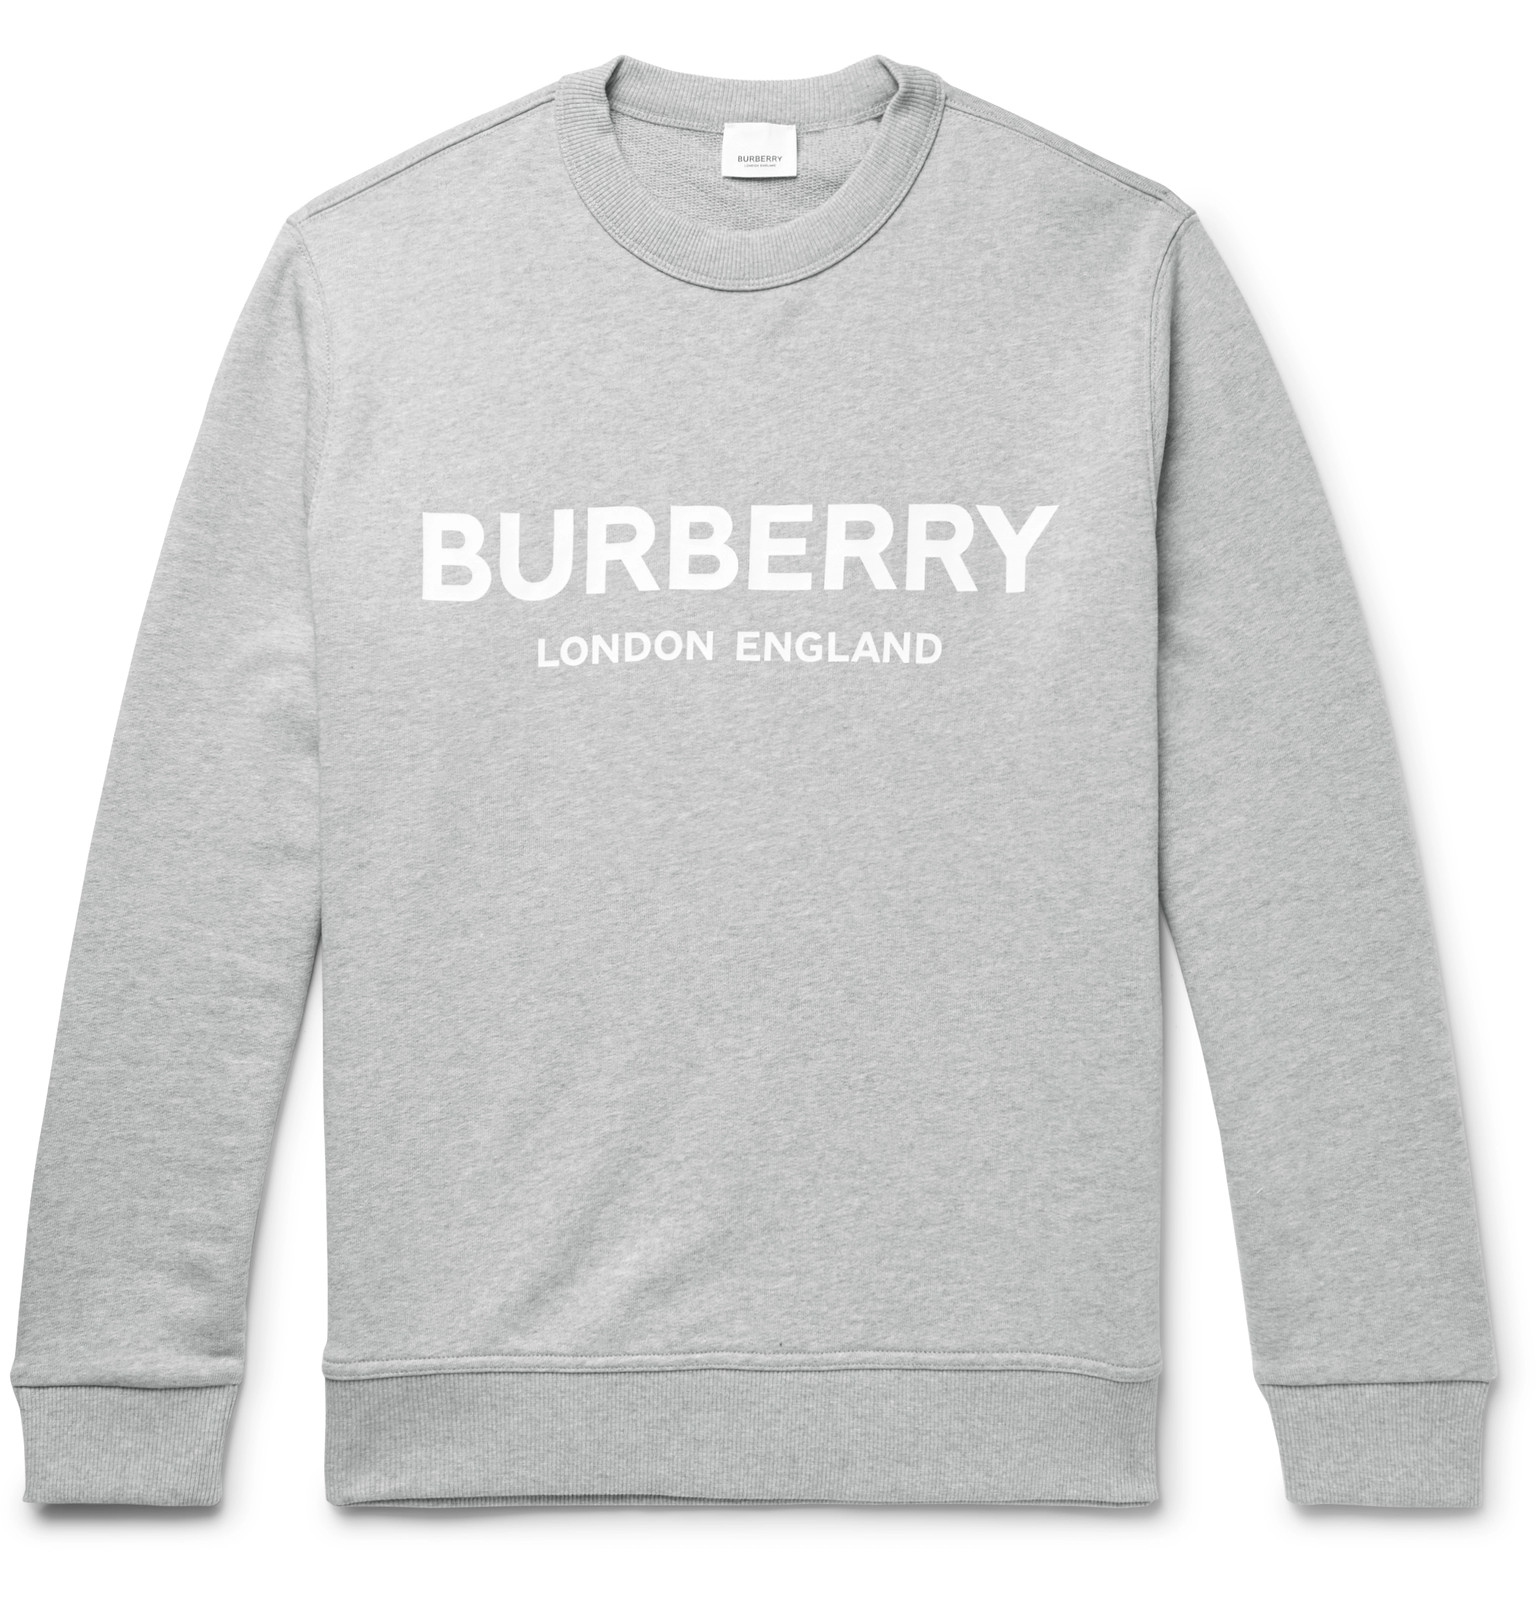 burberry men's sweatshirts